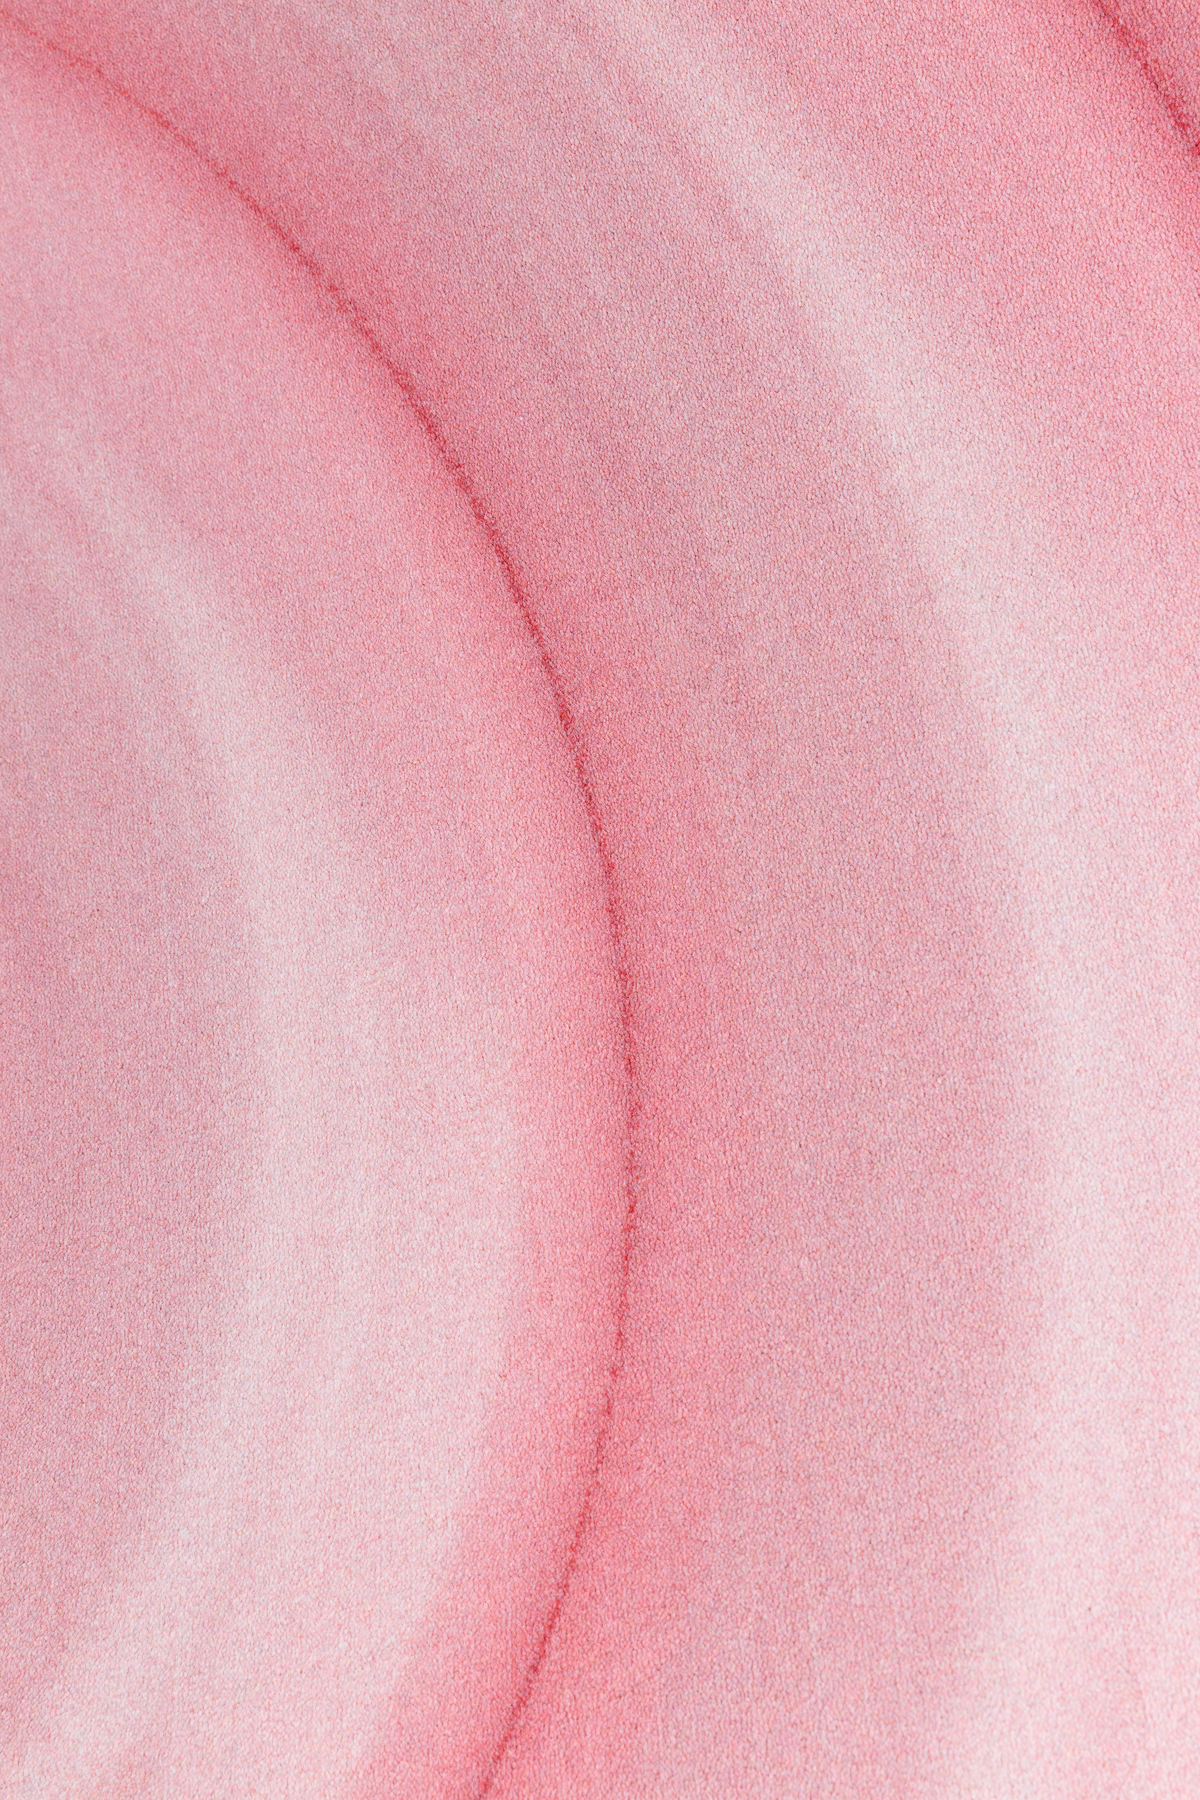 Ripples carpet pink detail 2